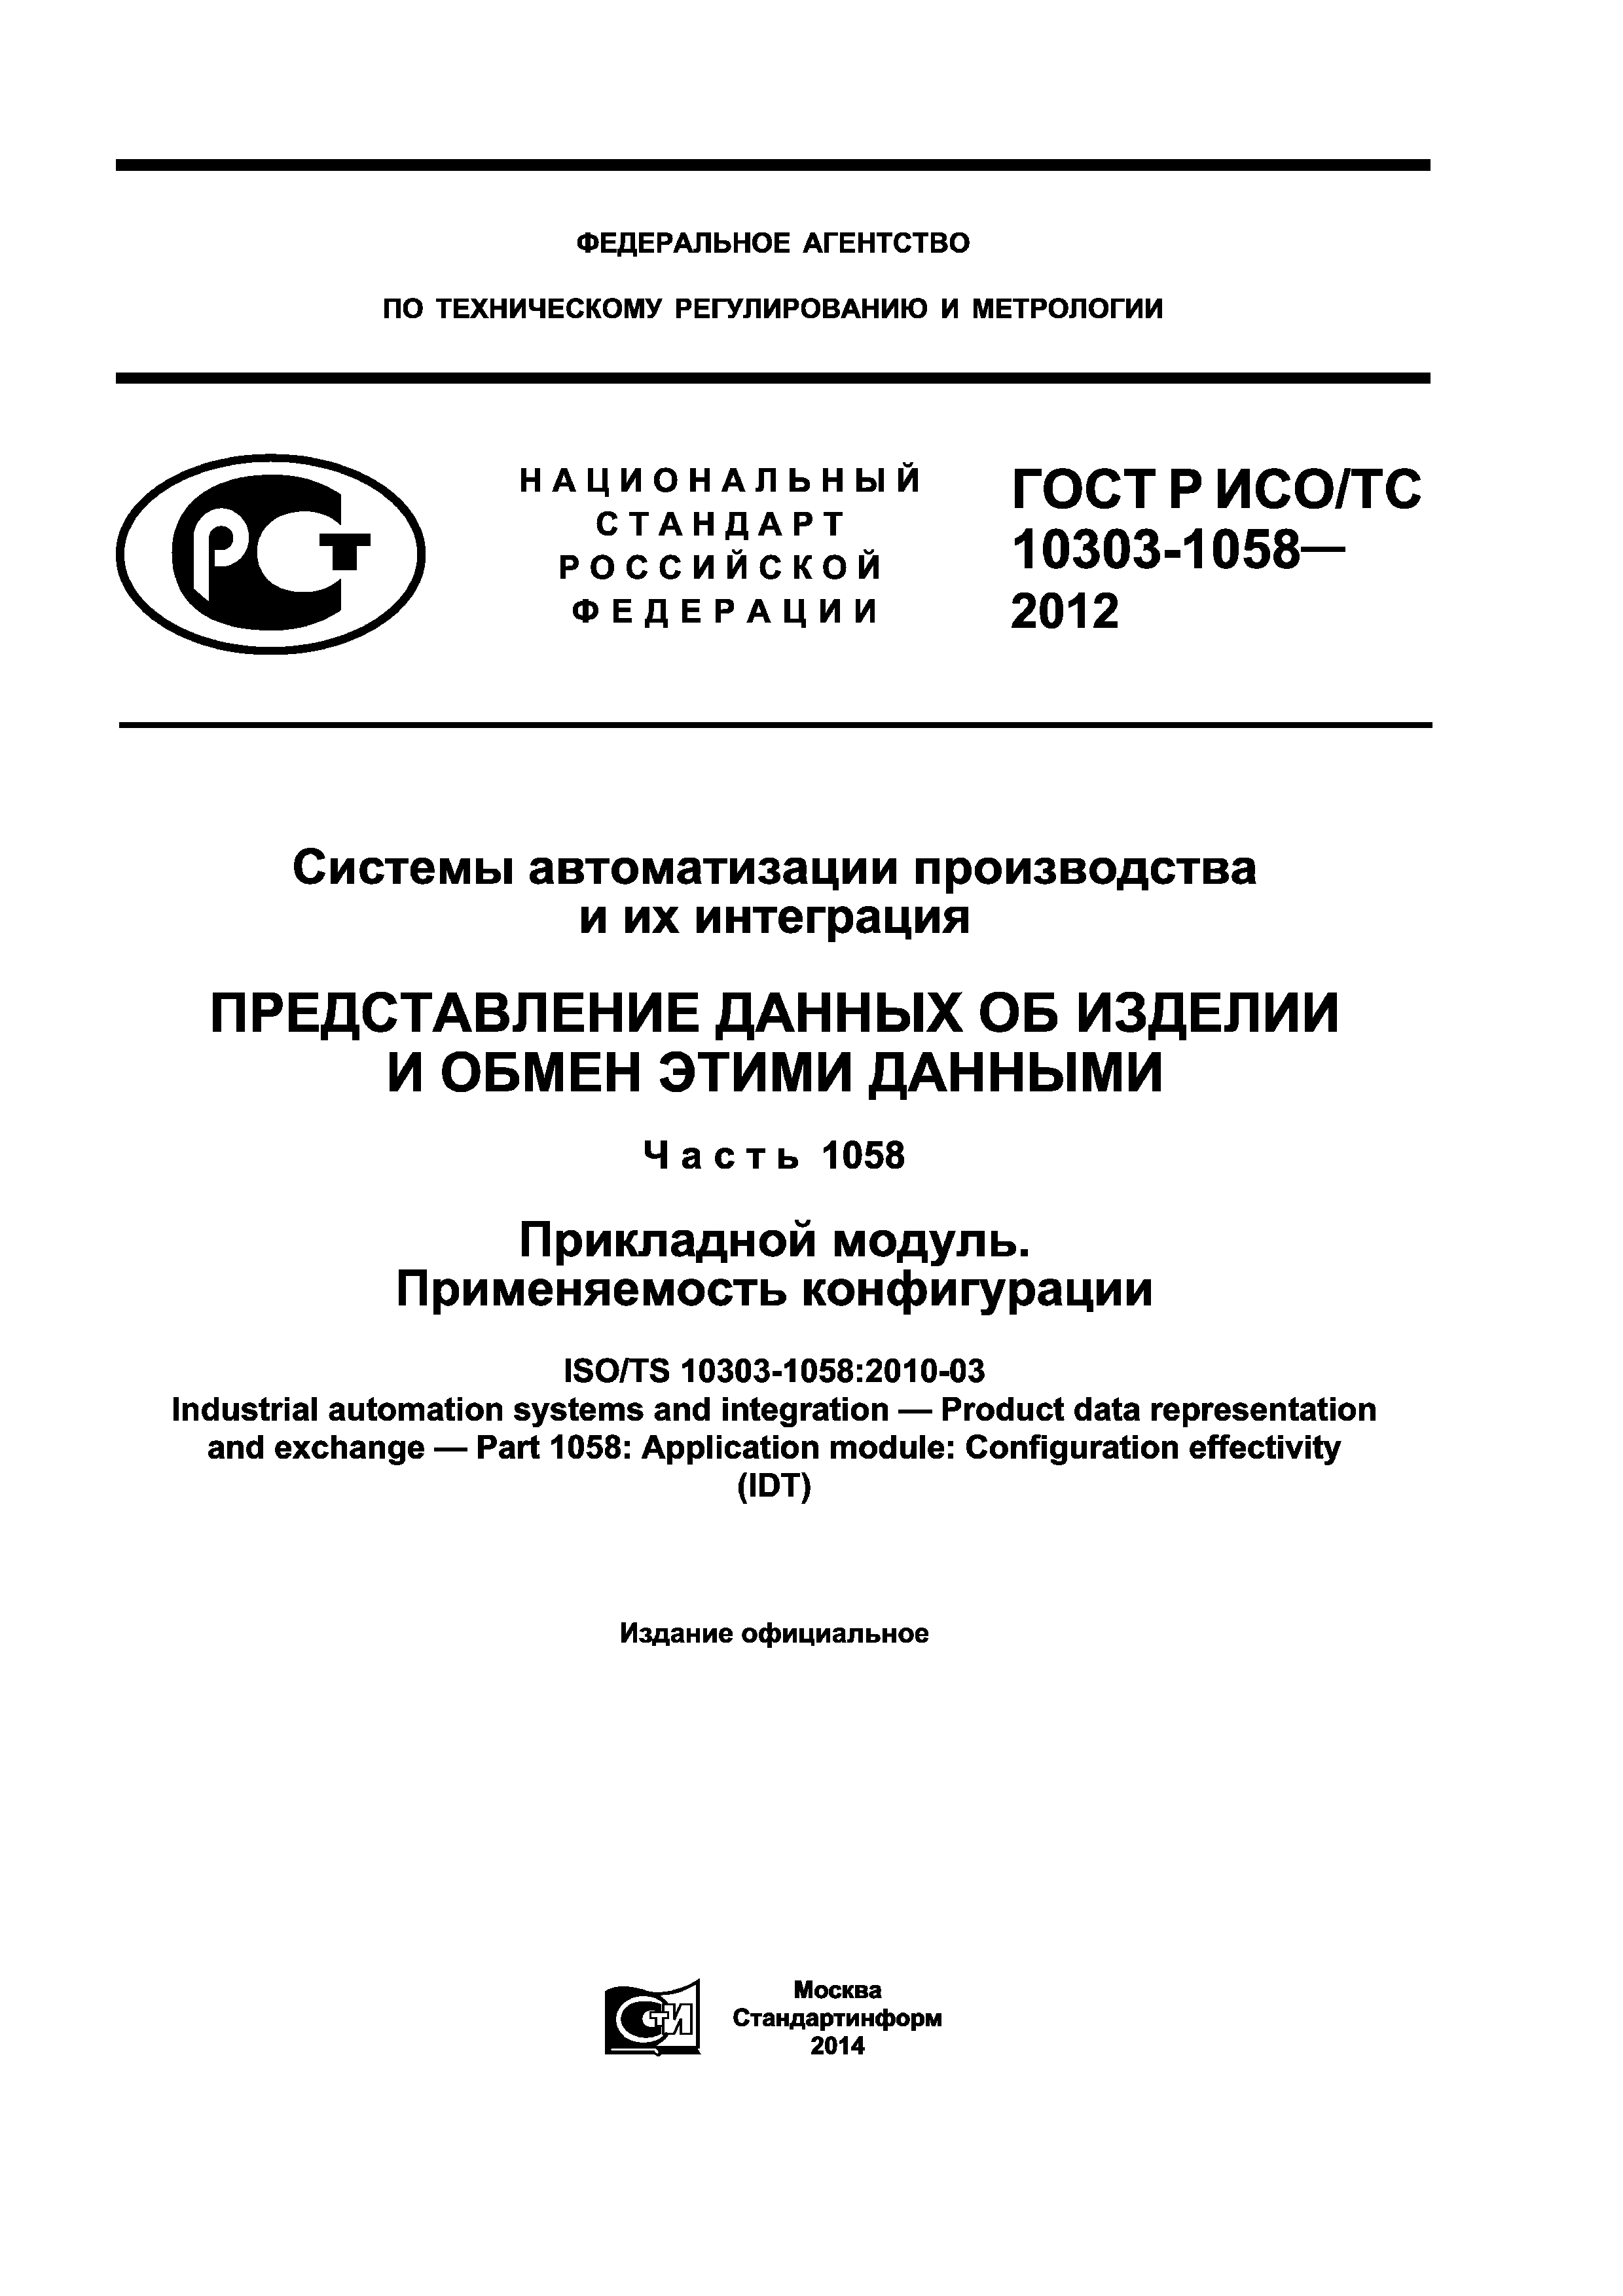 ГОСТ Р ИСО/ТС 10303-1058-2012